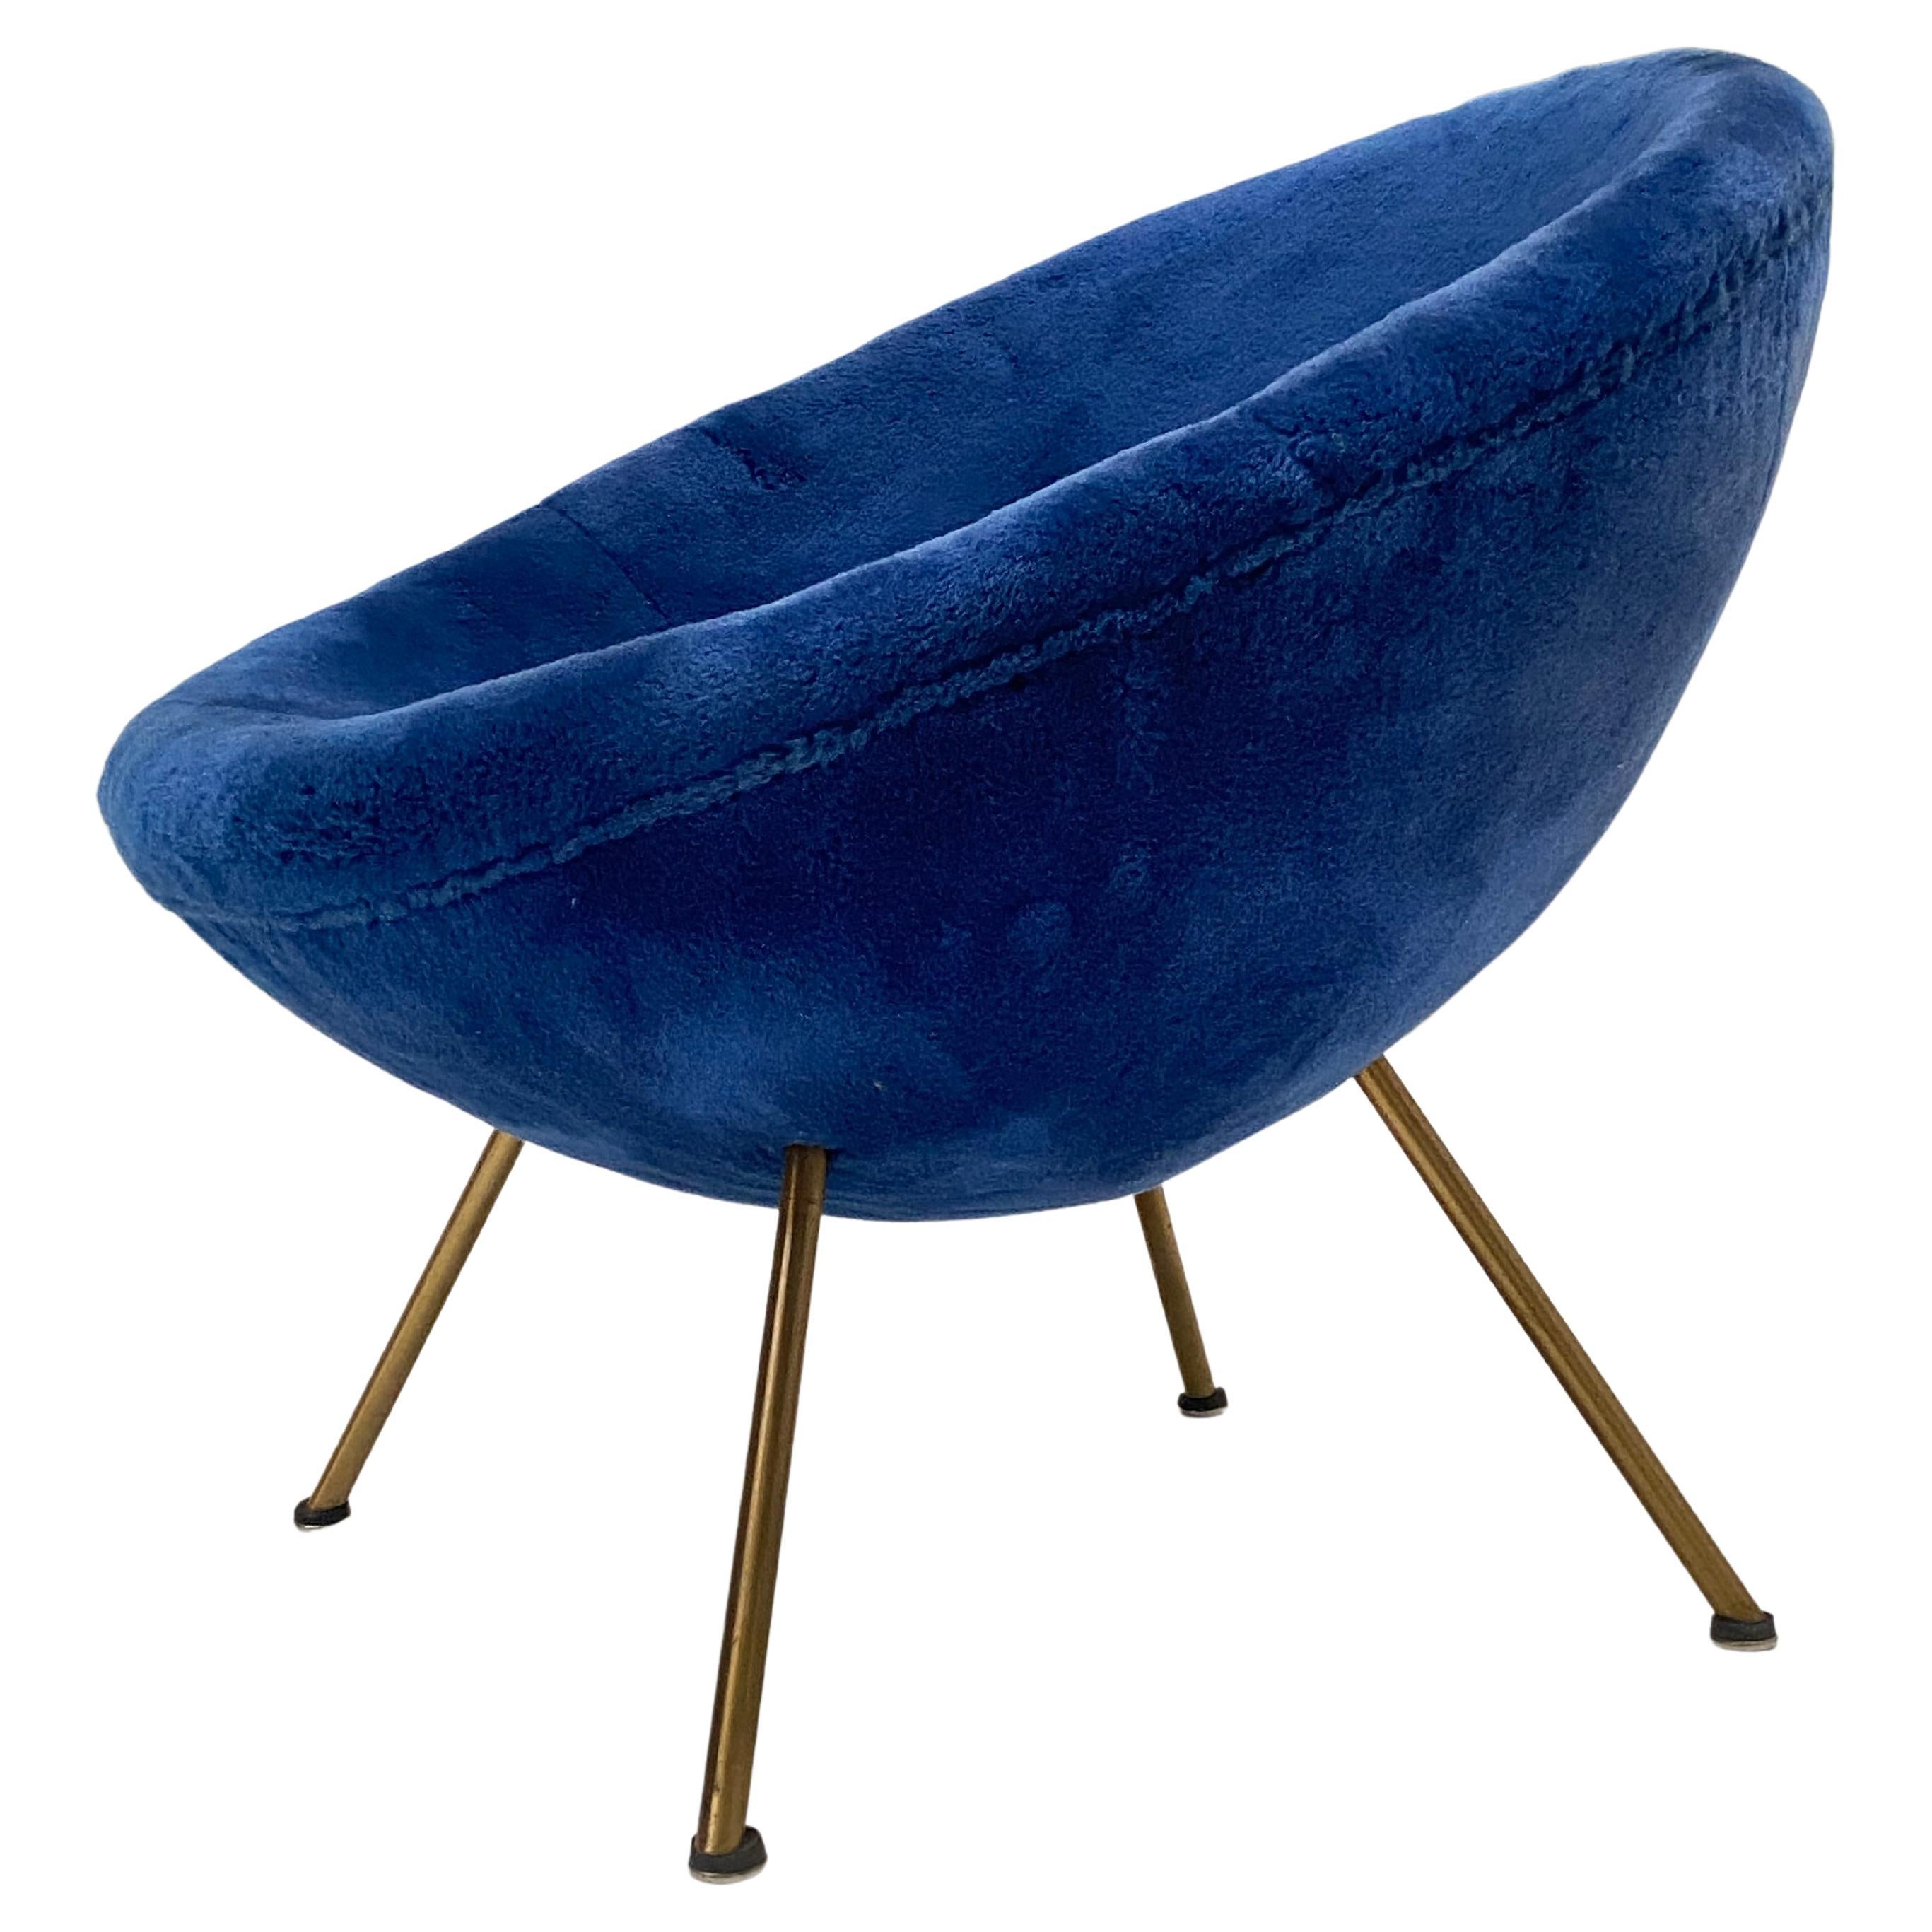 Fritz Neth Lounge Chair für Correcta Deutschland 1950er Jahre

Originaler Hochflor-Polsterstoff in tiefem Blau mit Messingbeinen

Schöner Originalzustand wie gefunden